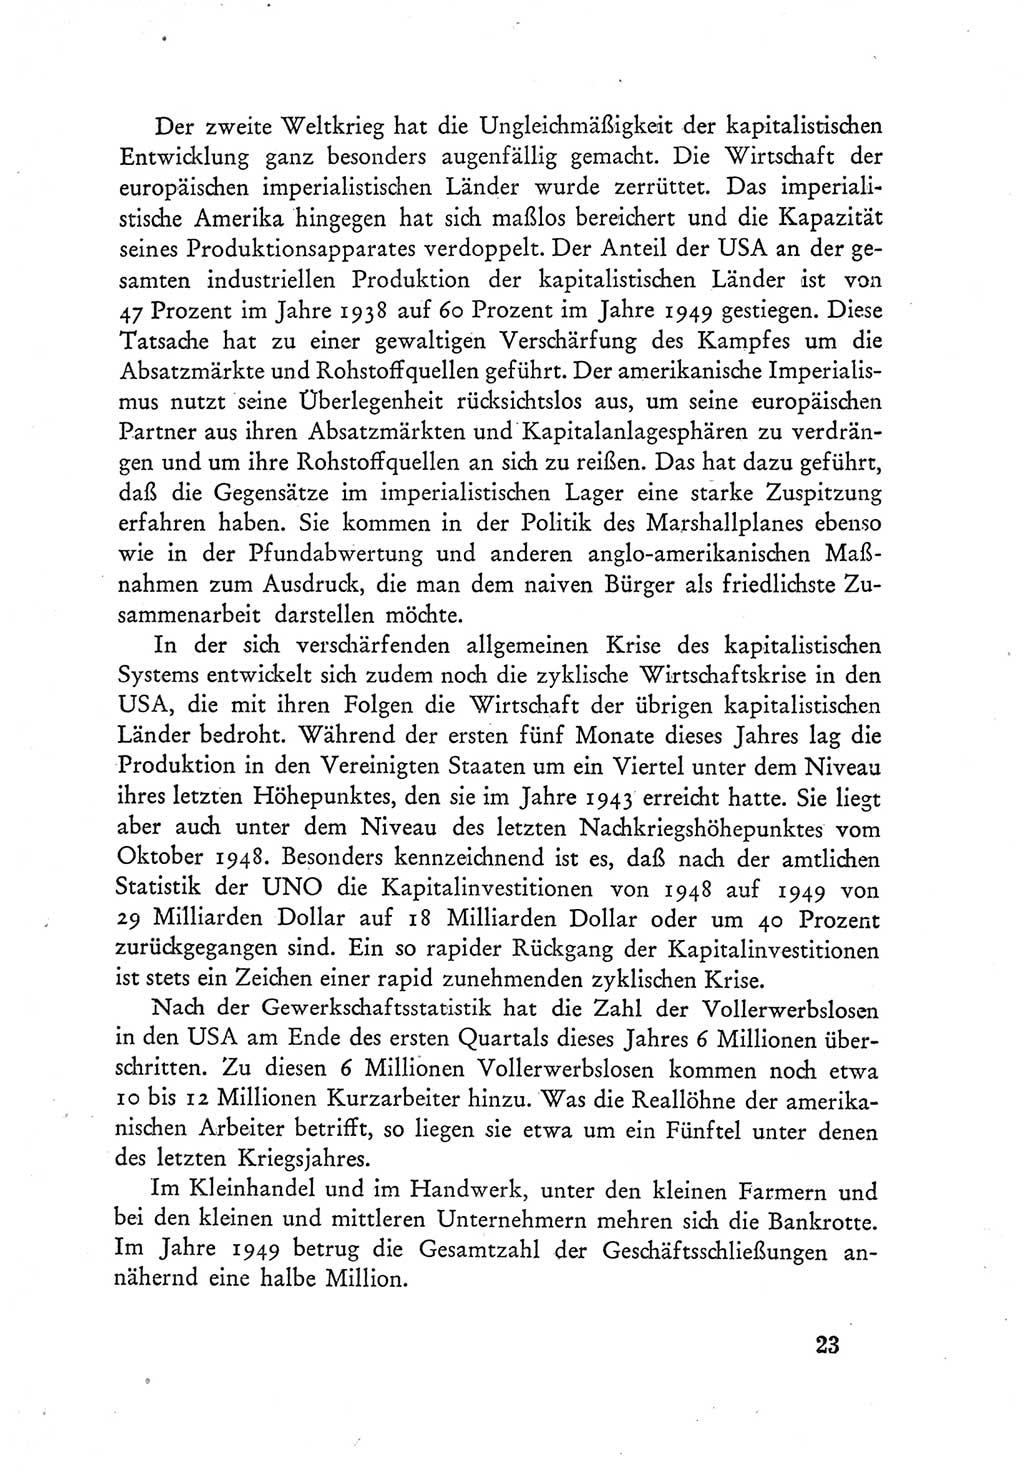 Protokoll der Verhandlungen des Ⅲ. Parteitages der Sozialistischen Einheitspartei Deutschlands (SED) [Deutsche Demokratische Republik (DDR)] 1950, Band 1, Seite 23 (Prot. Verh. Ⅲ. PT SED DDR 1950, Bd. 1, S. 23)